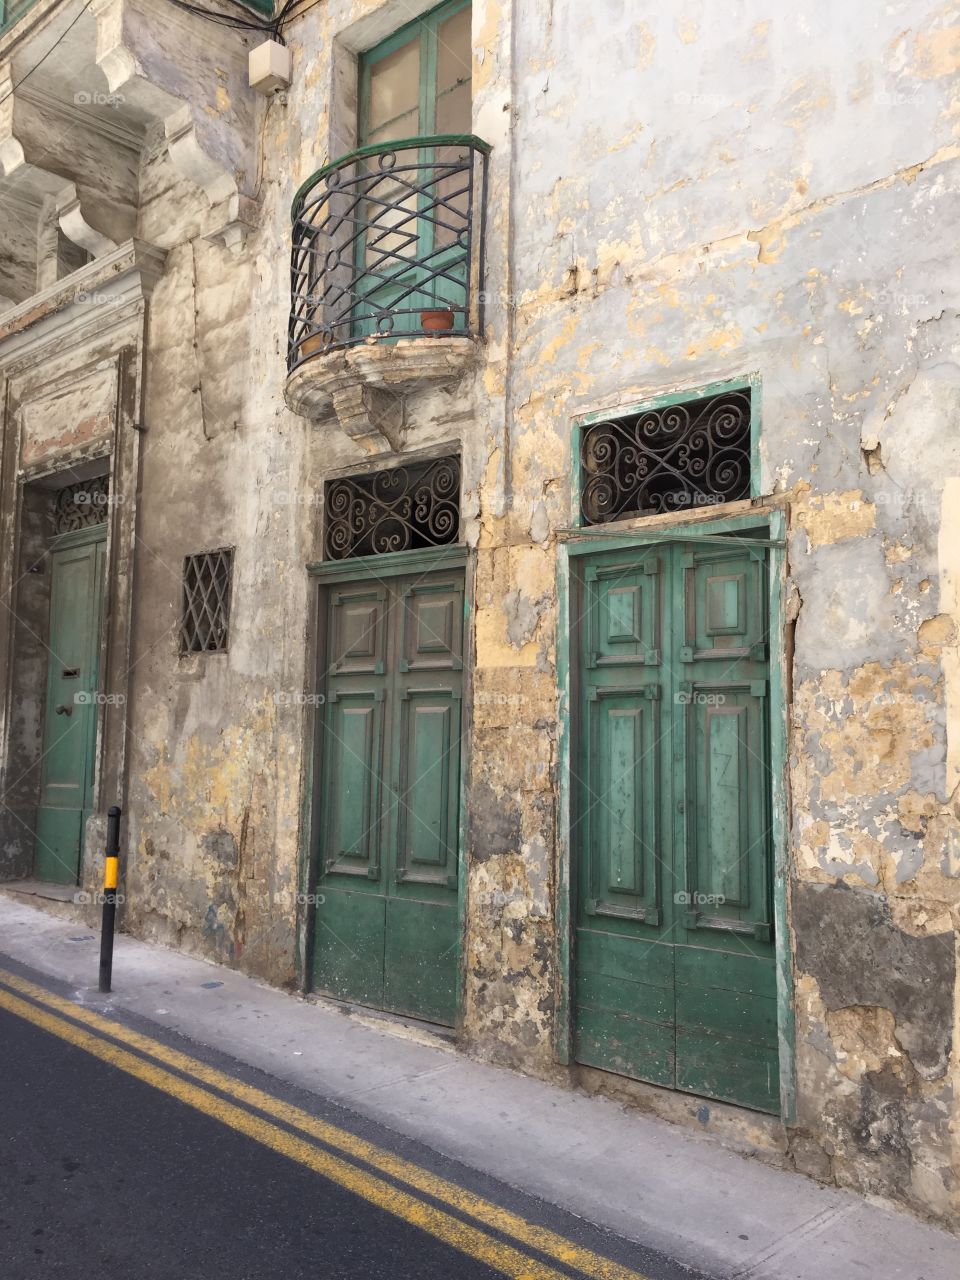 Doors of Malta